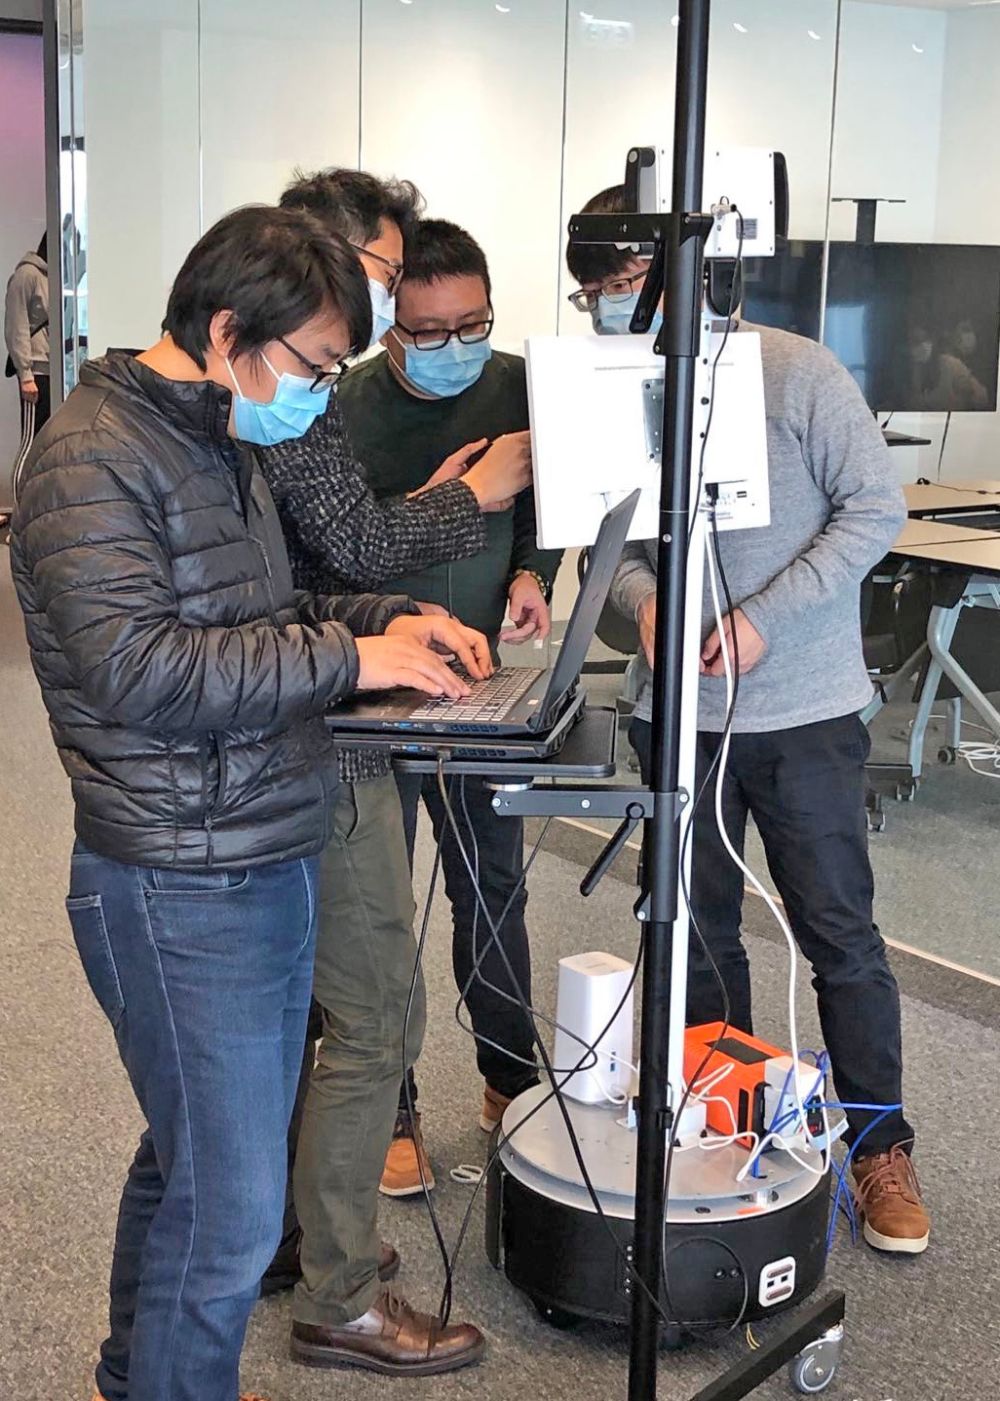 科技公司的團隊正在安裝和測試「體溫探測移動機械人」。